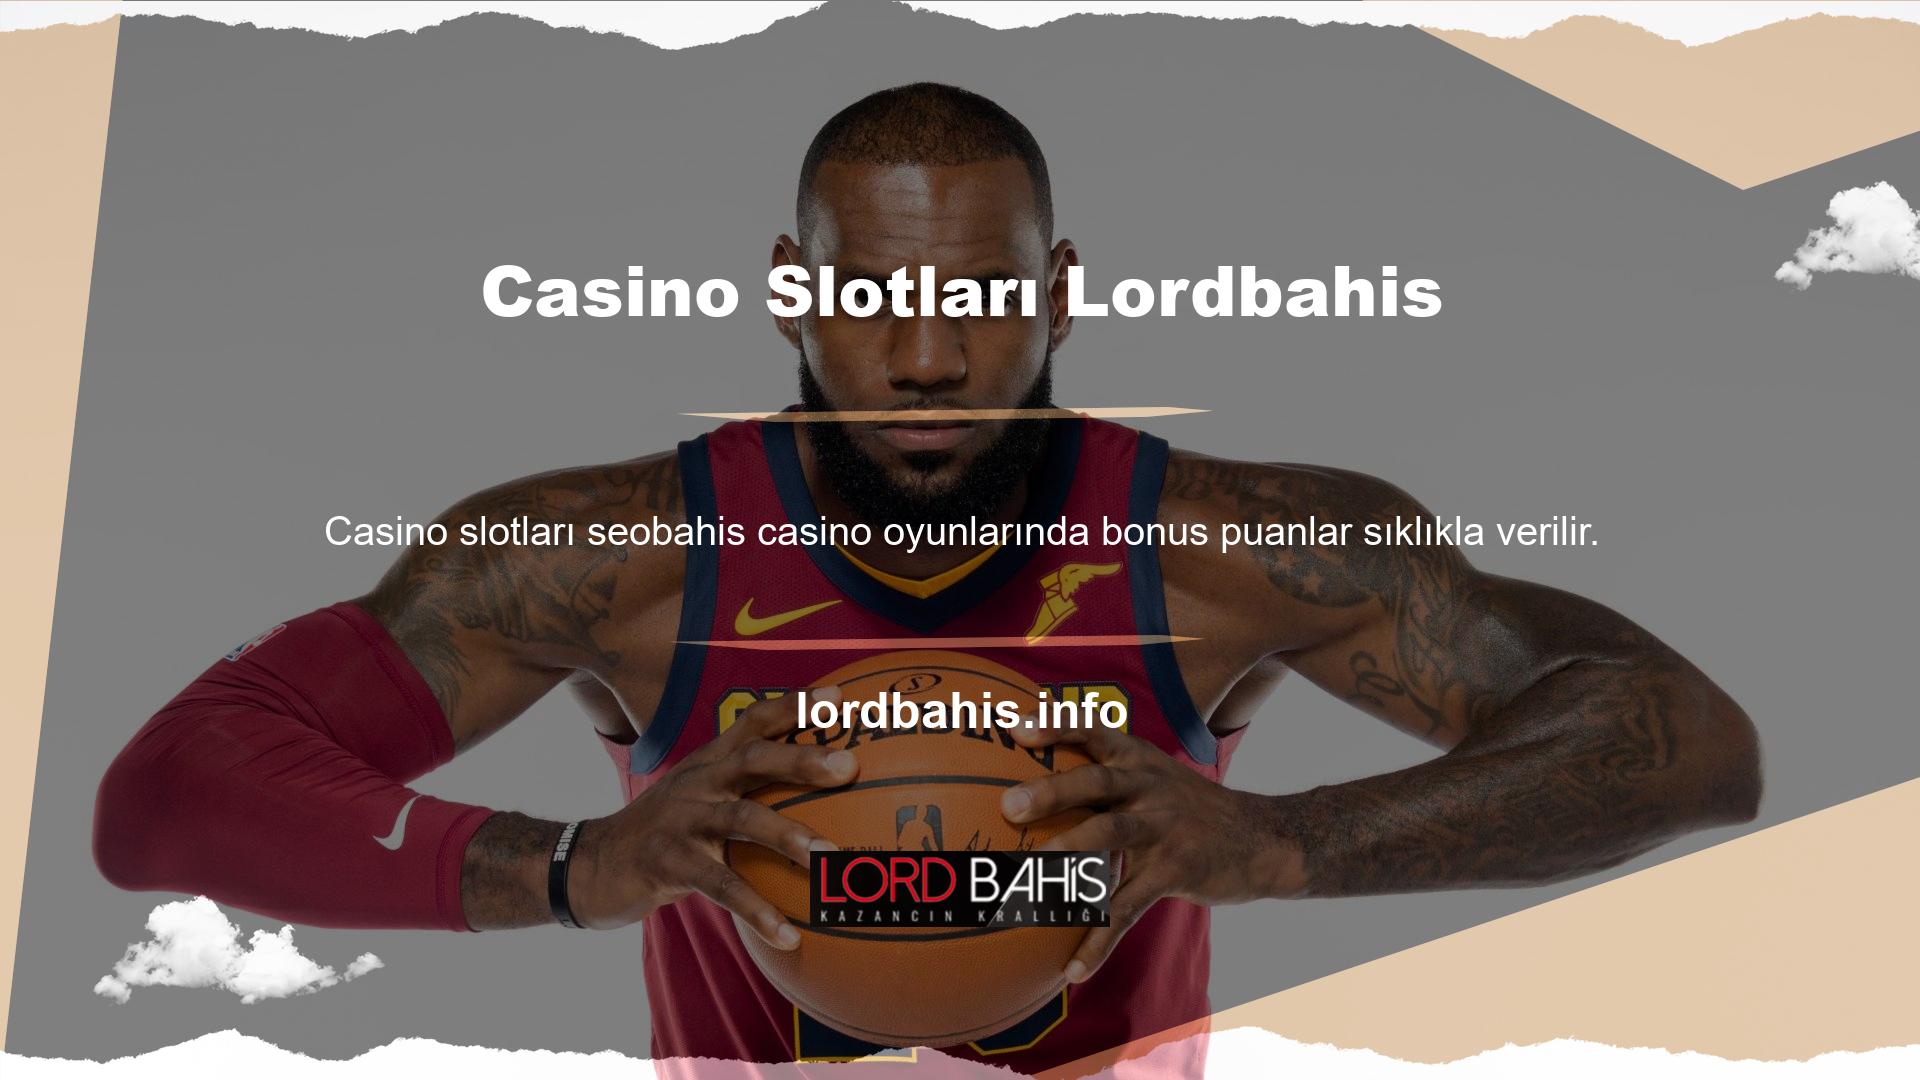 Lordbahis Casino Slot Makineleri sıklıkla çevrimiçi bahis için canlı krupiye oyunları sunar